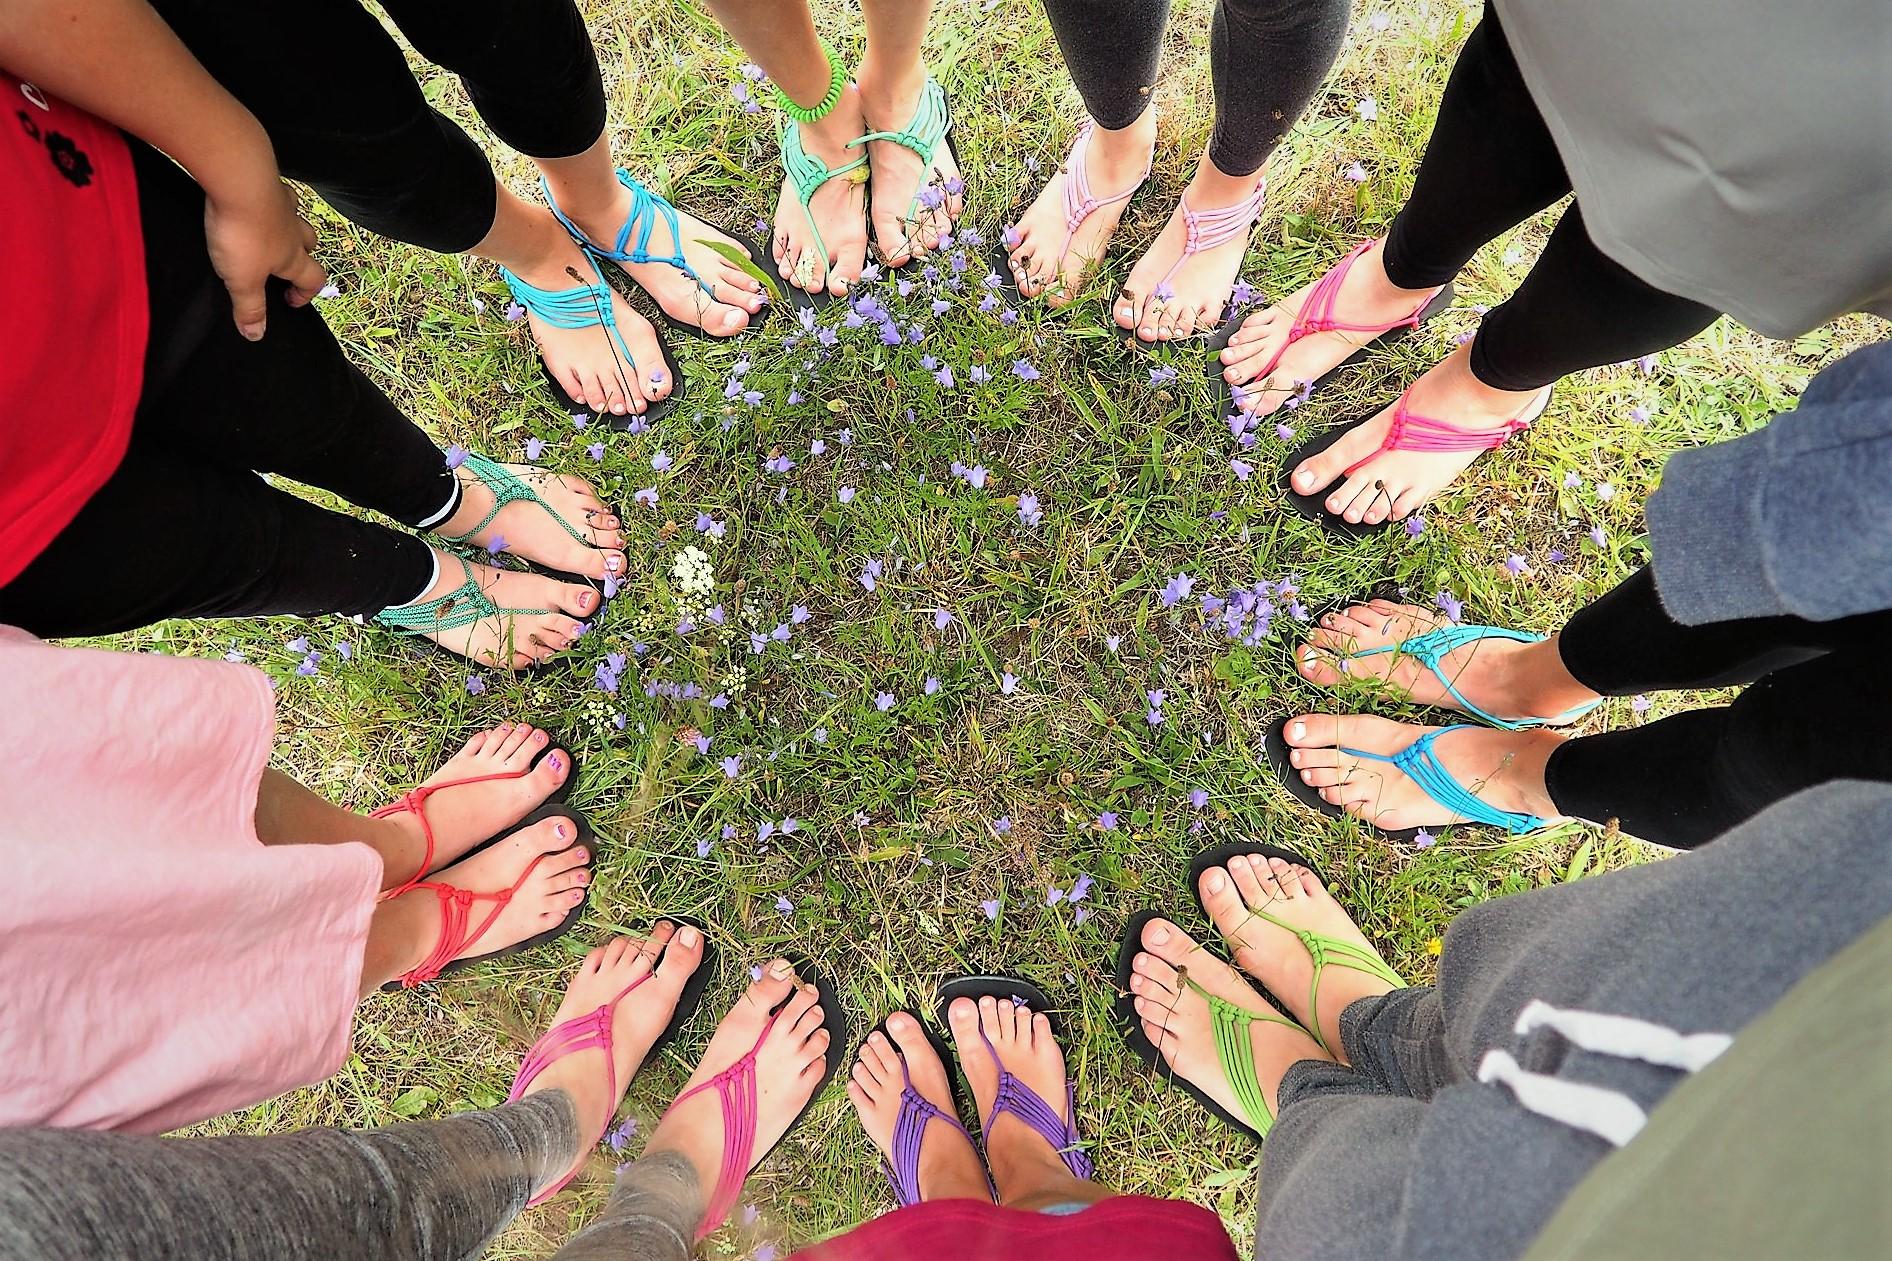 Barefoot sandály (13:00-15:30) - Kreativní den v Lužánkách